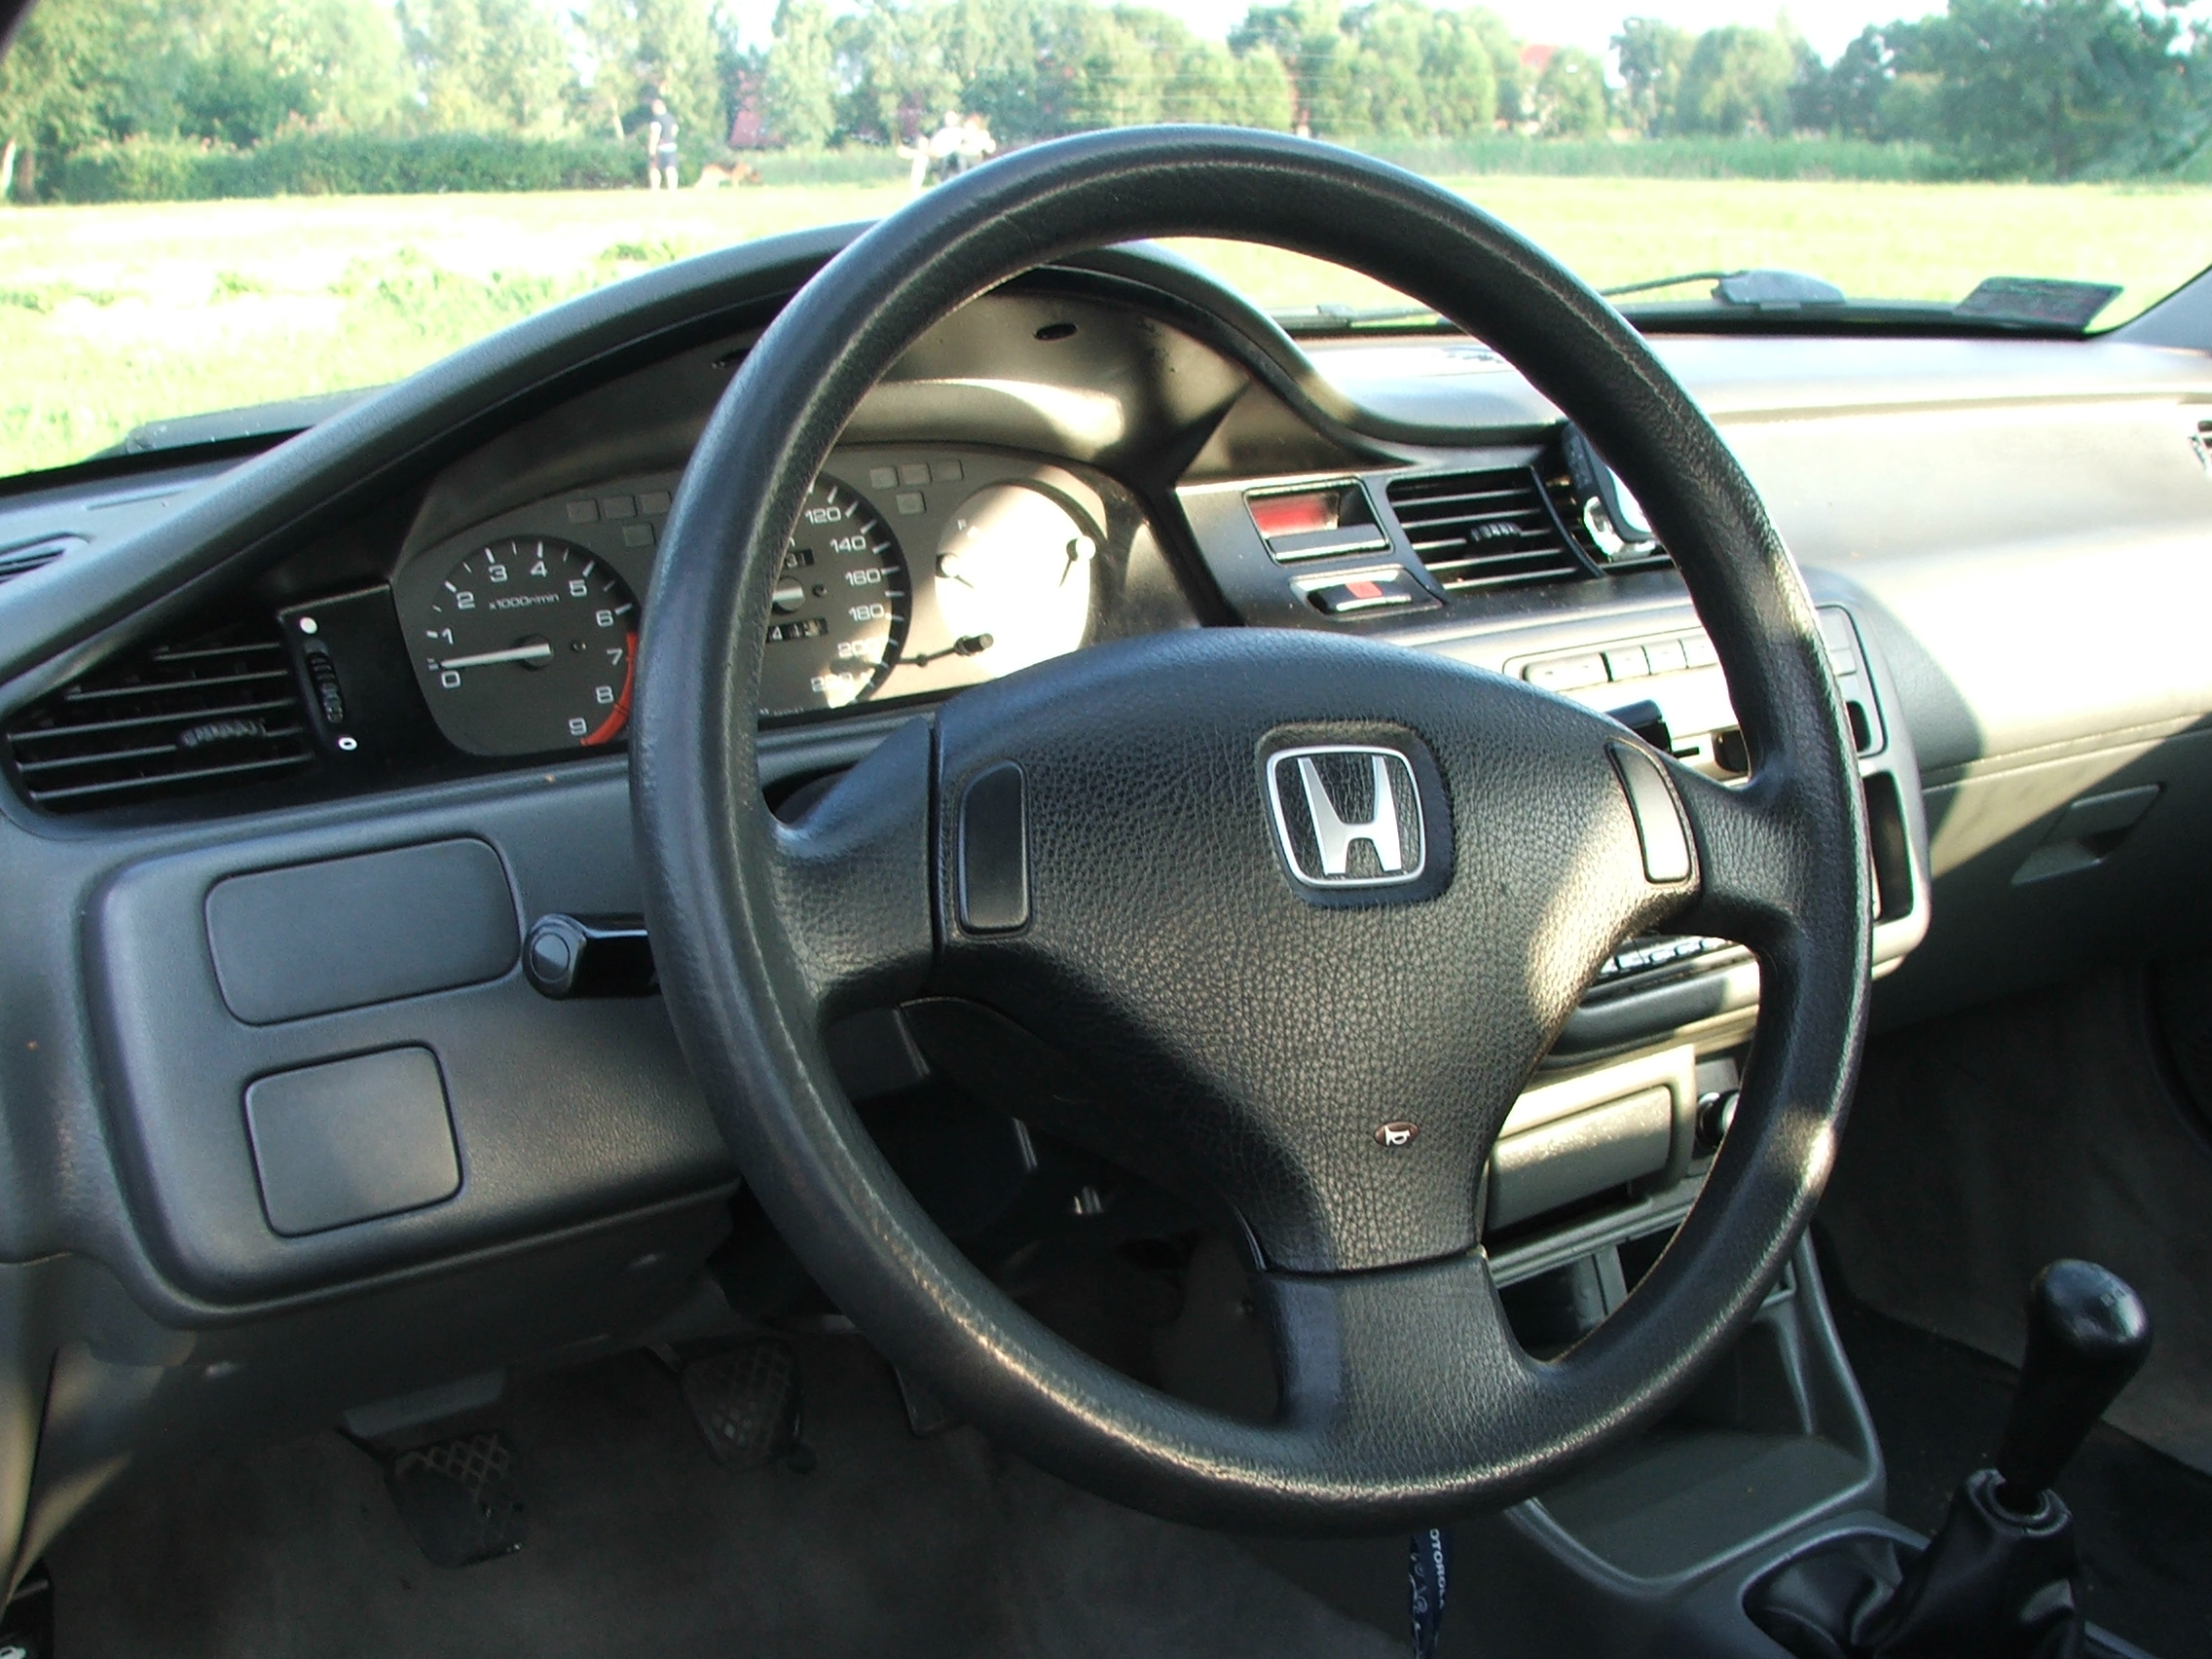 Honda Civic 93 1.3 16V Dziwne Obroty - 6 - Elektroda.pl